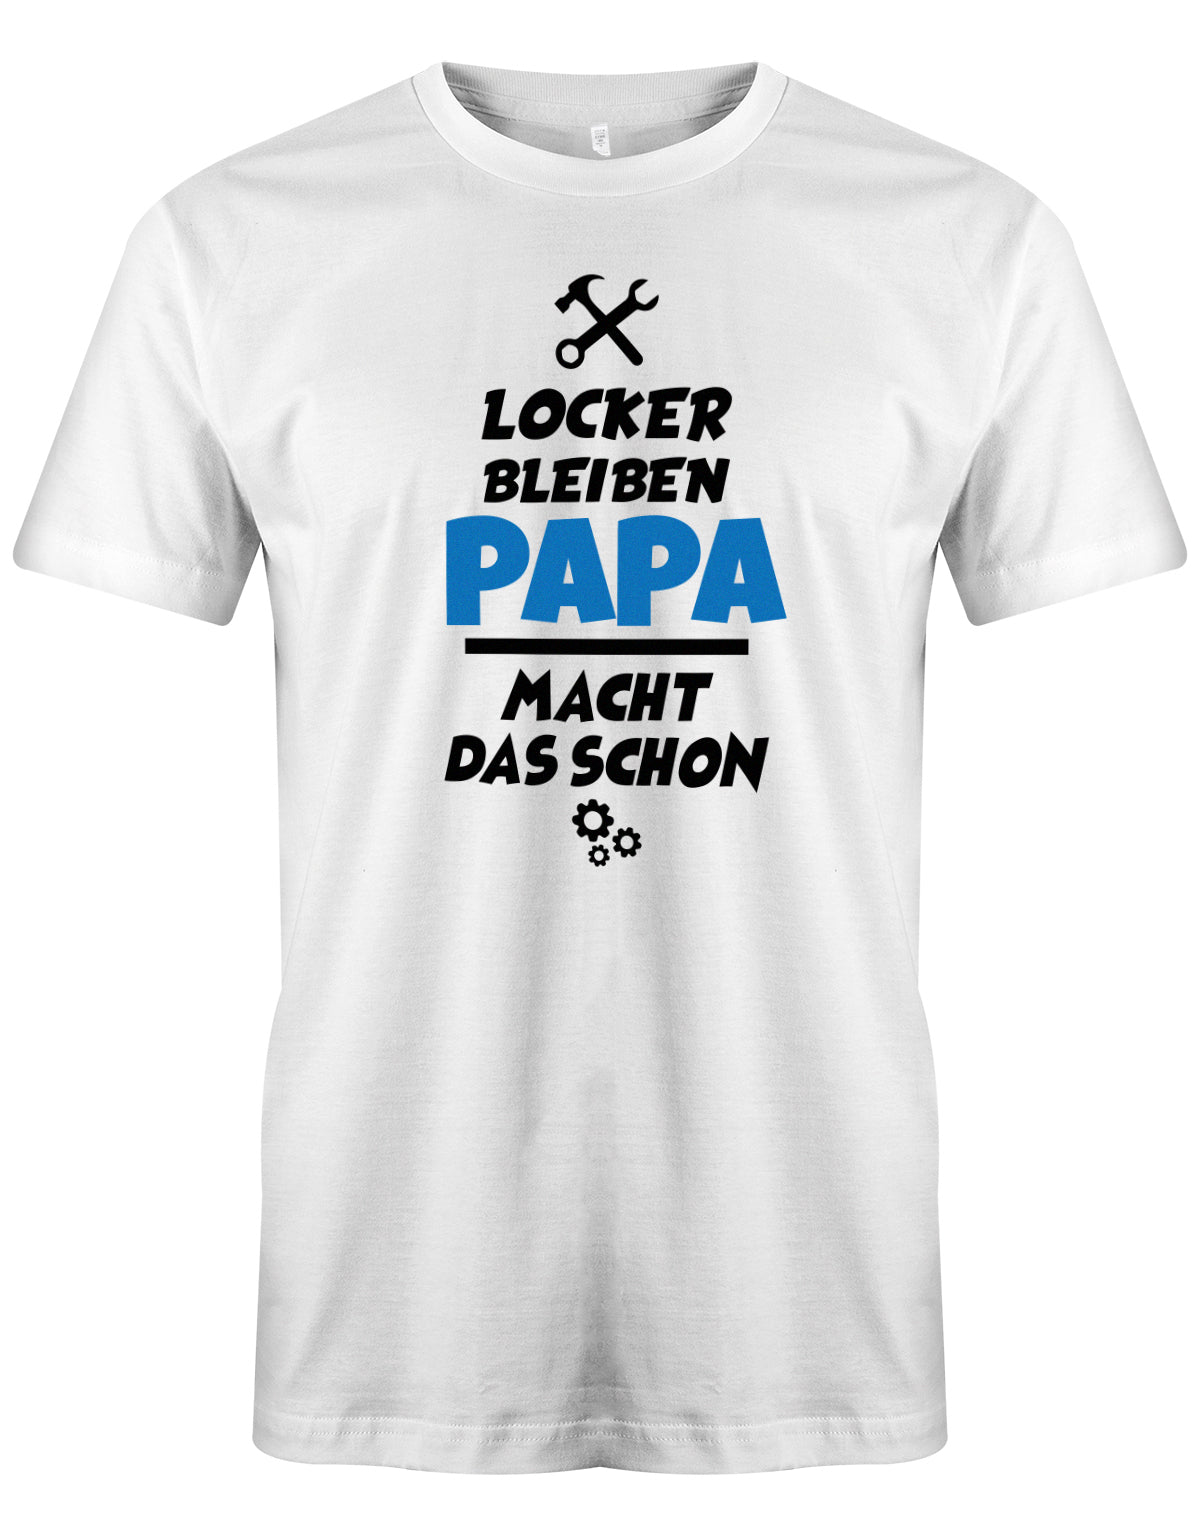 Papa T-Shirt - Locker bleiben Papa macht das schon Weiss